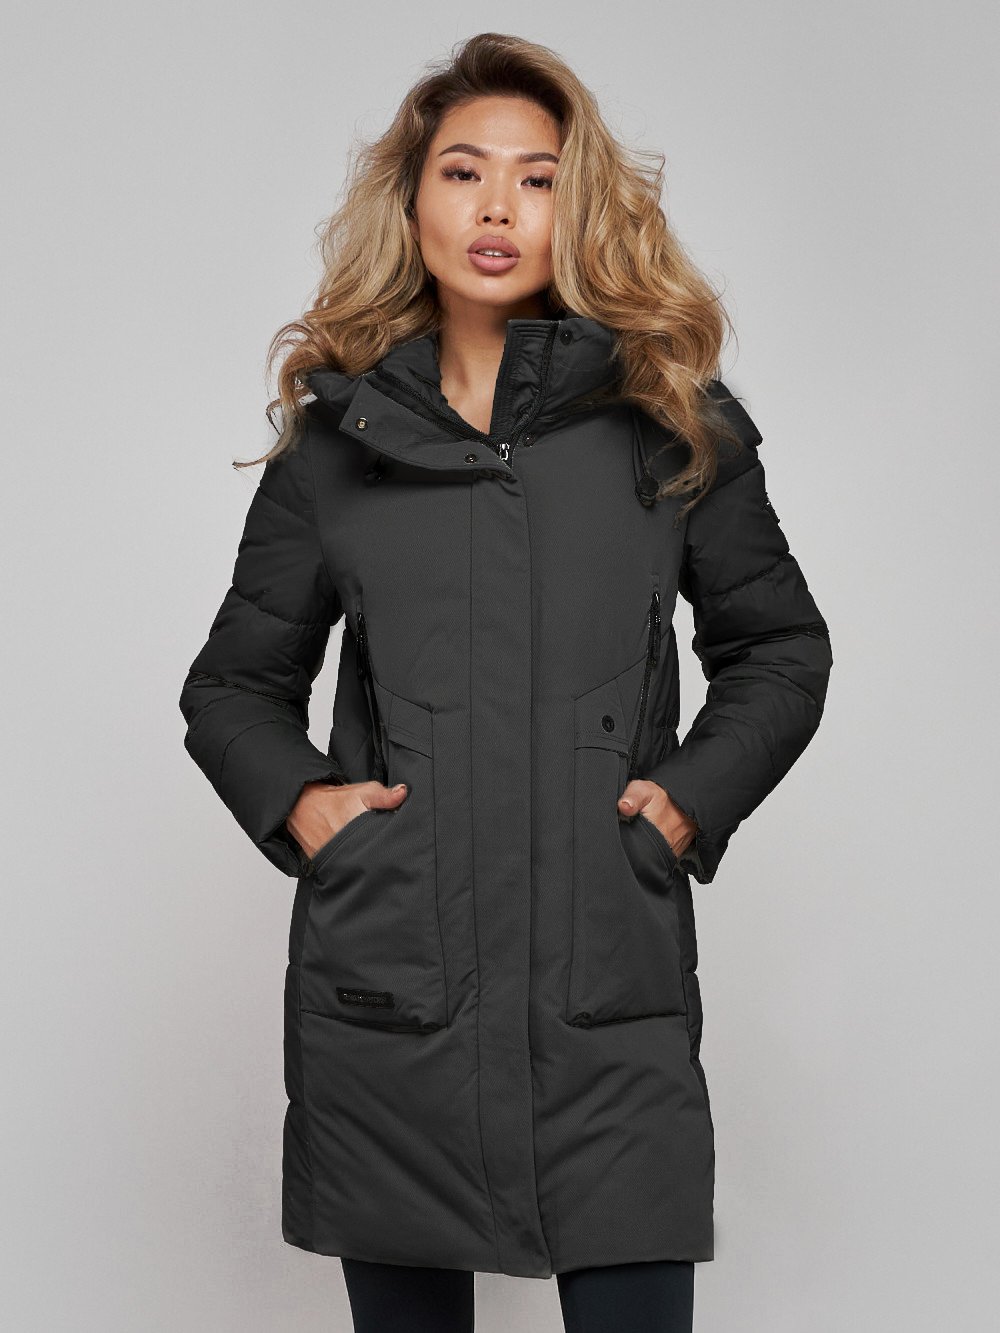 Купить куртку женскую оптом от производителя недорого в Москве 589006TC 1